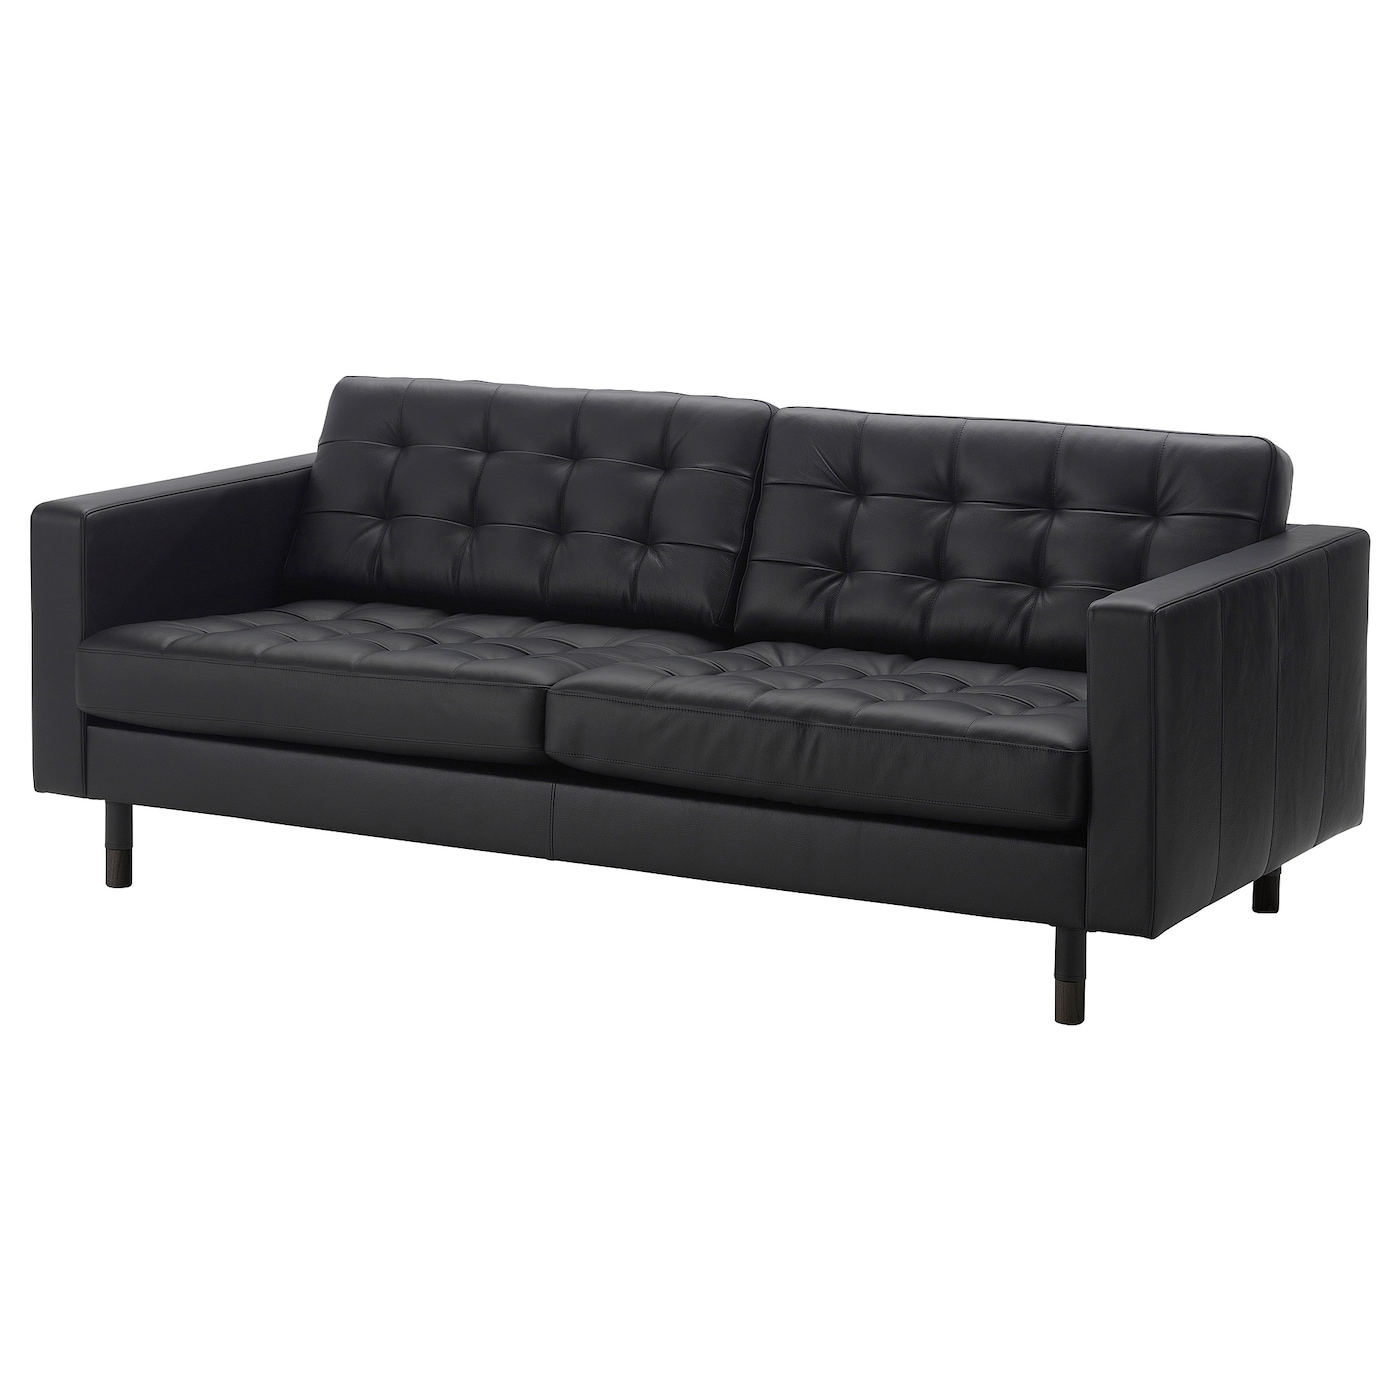 3-местный диван - IKEA LANDSKRONA, 204х89х78 см, черный, кожа, ЛАНДСКРУНА ИКЕА